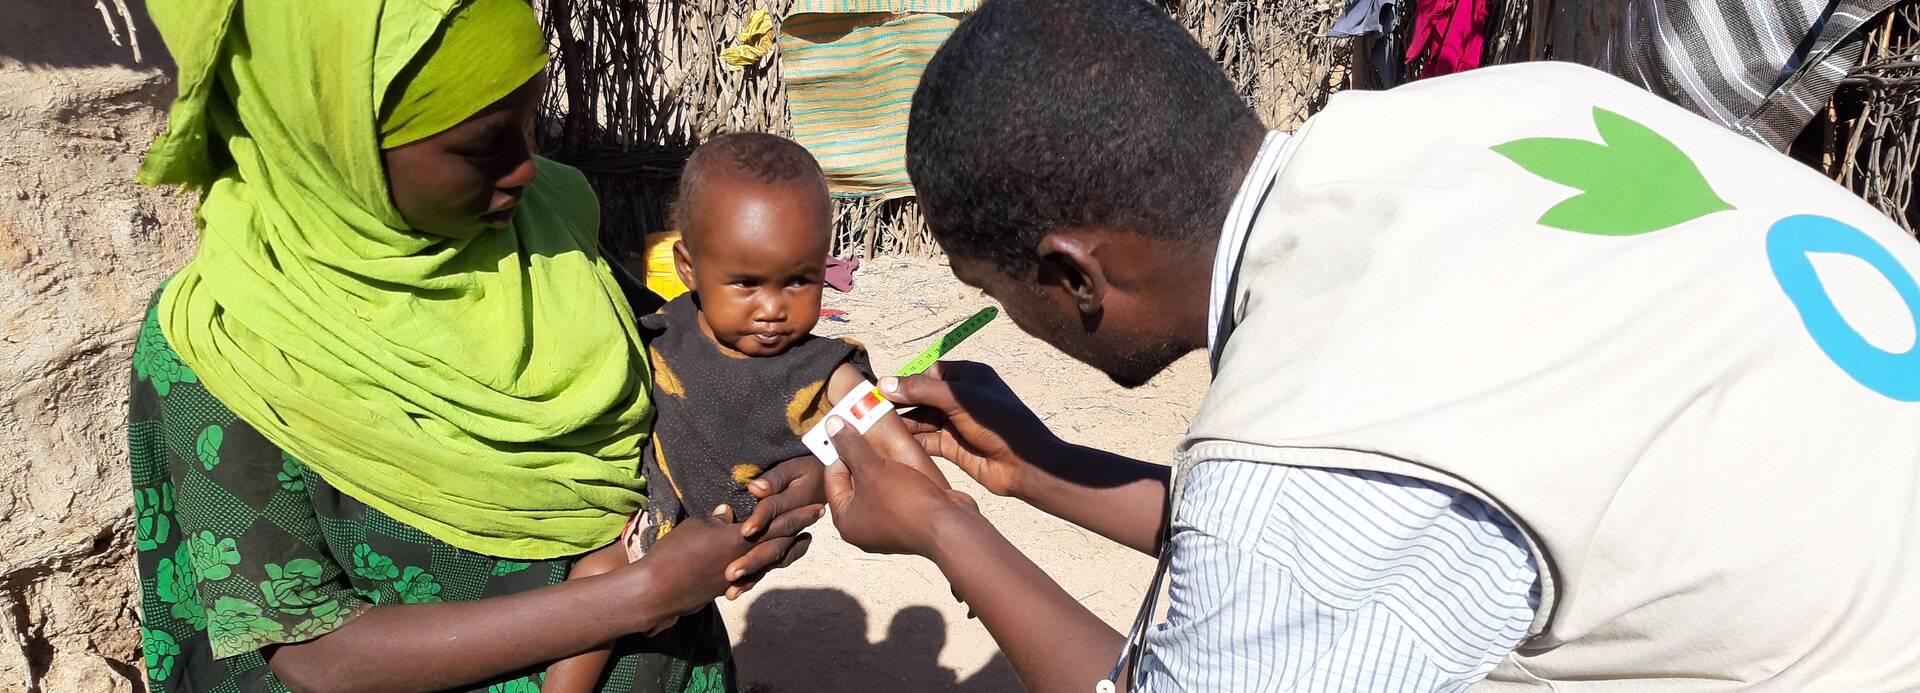 Ein Mitarbeiter von Aktion gegen den Hunger untersucht ein Kleinkind in den Armen der Mutter auf Mangelernährung.